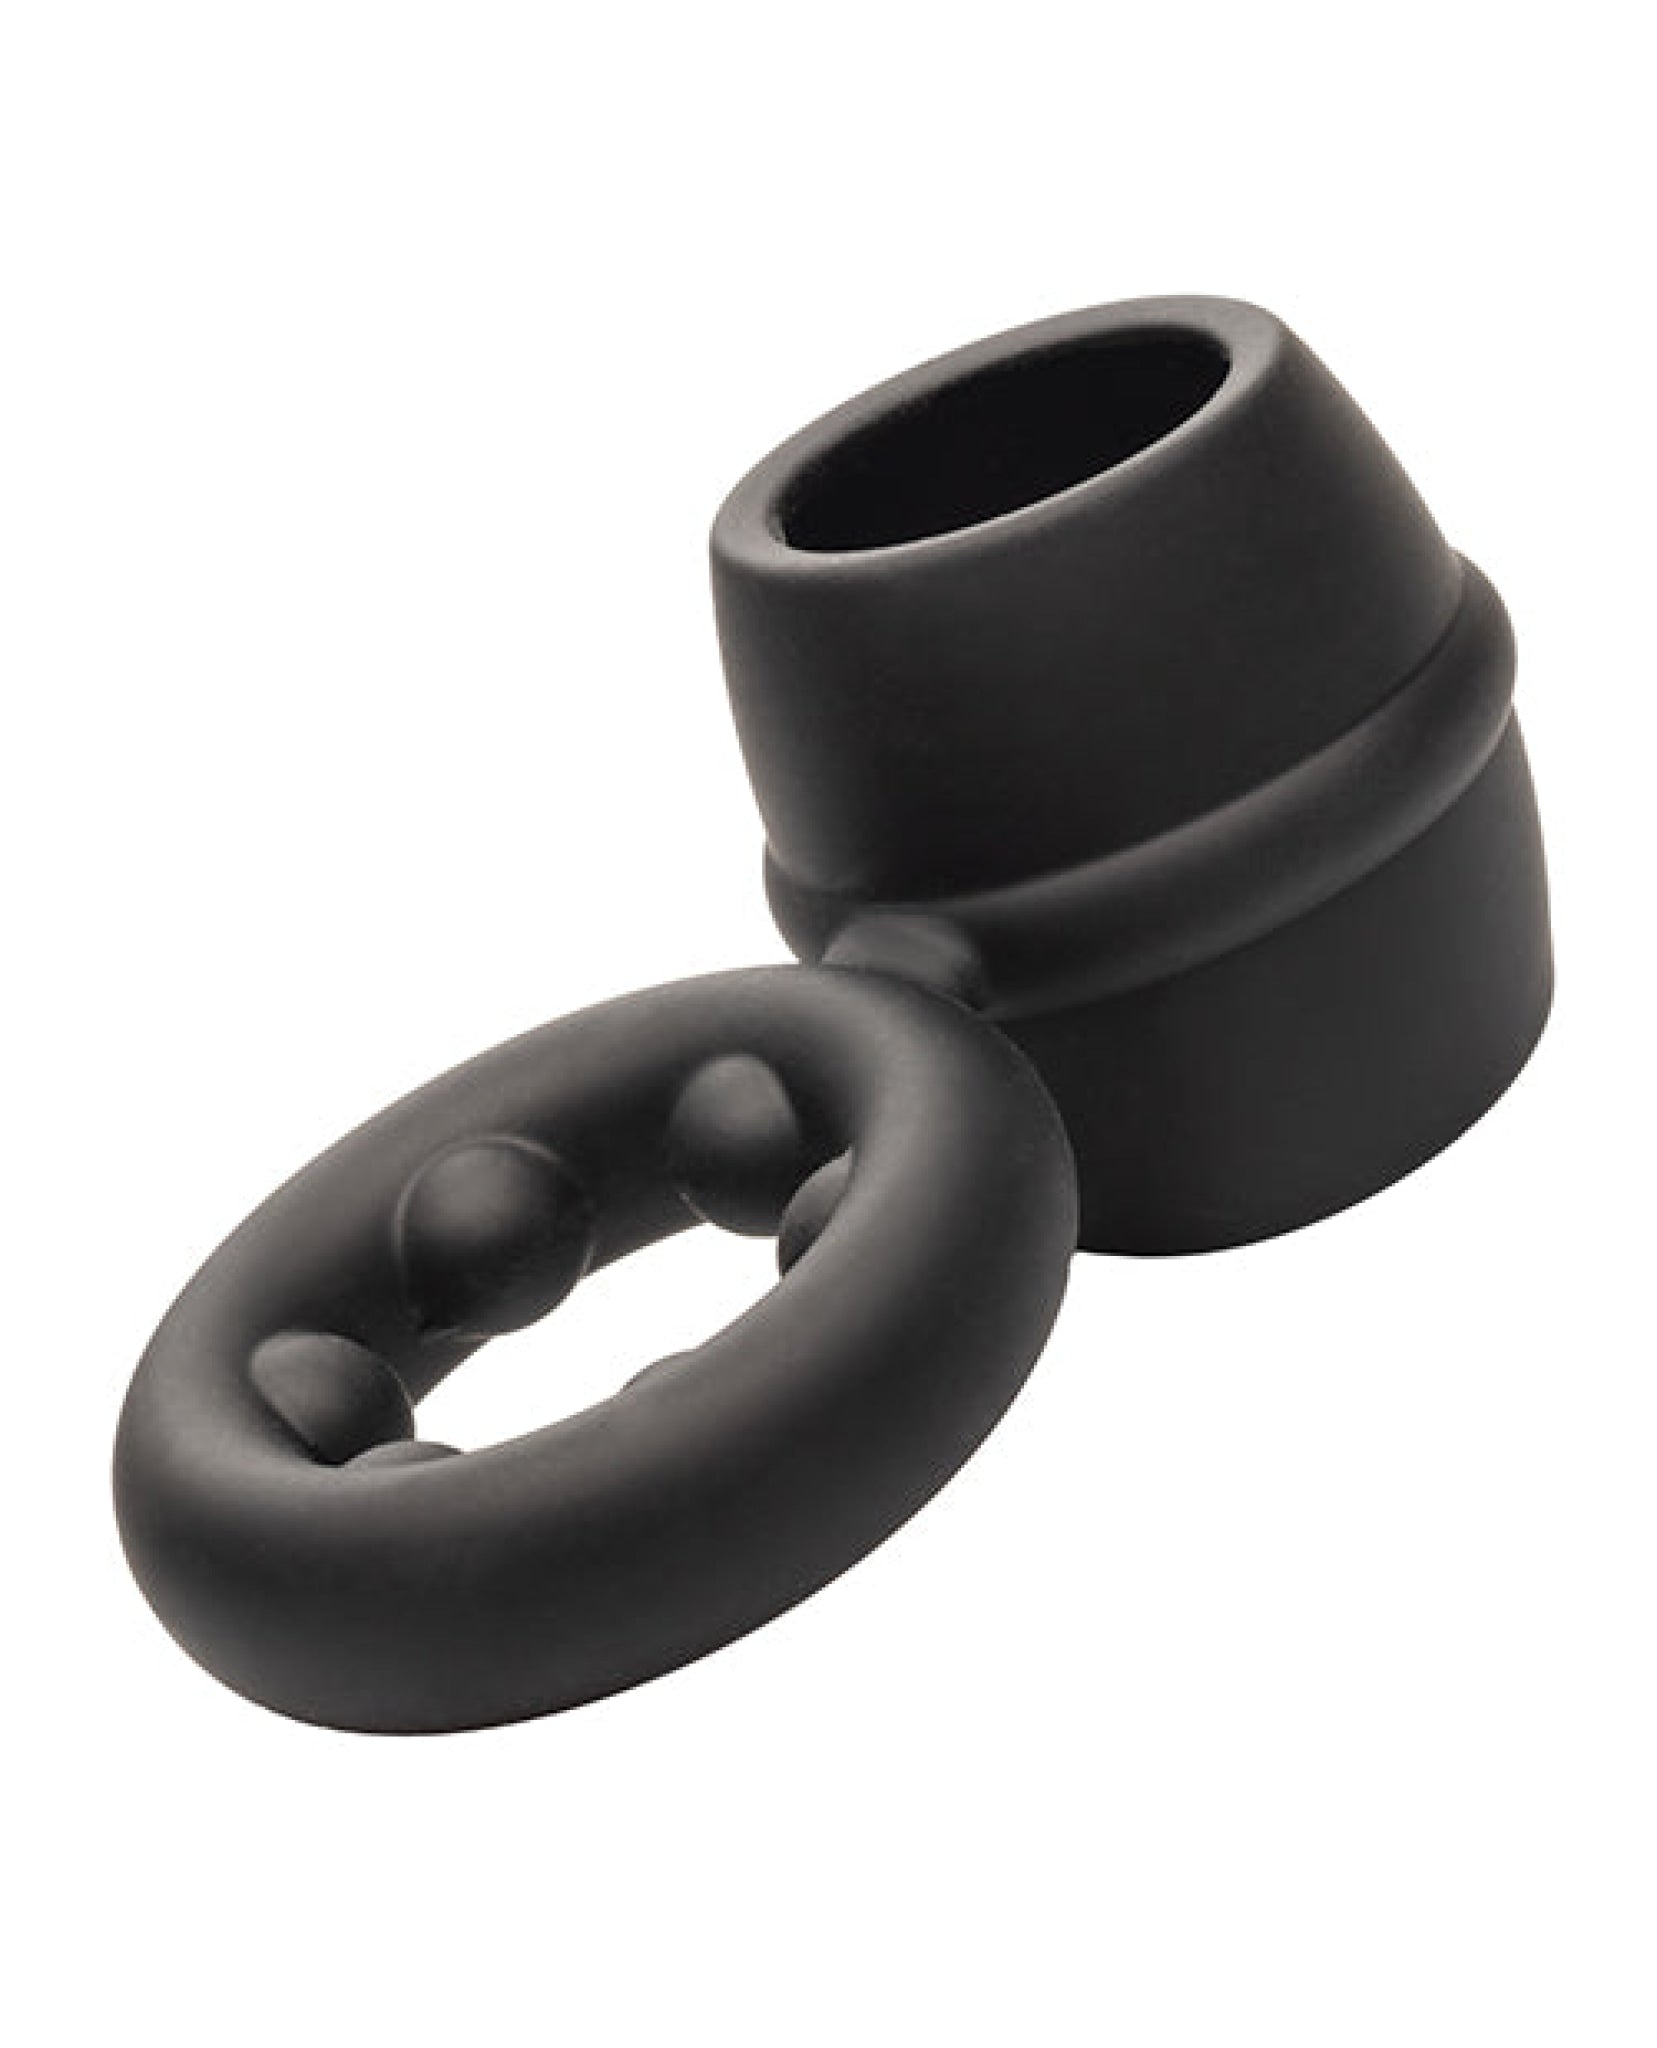 Alpha Liquid Silicone Dual Magnum Ring - Black CalExotics